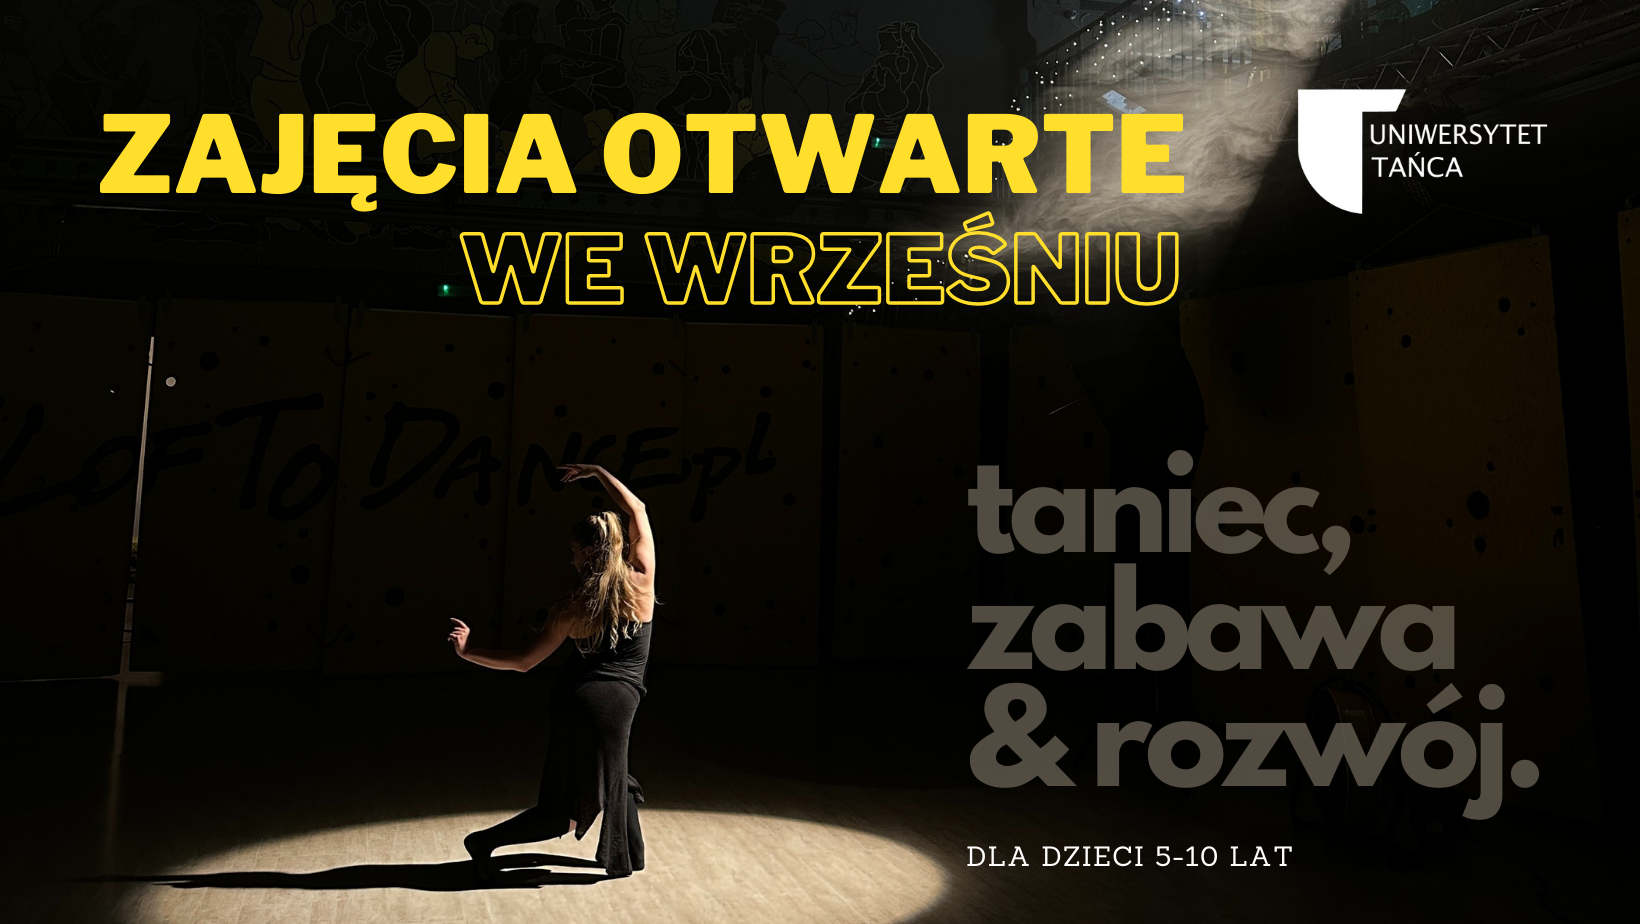 Trwają zapisy dla dzieci na pierwszy Uniwersytet Tańca w Krakowie!